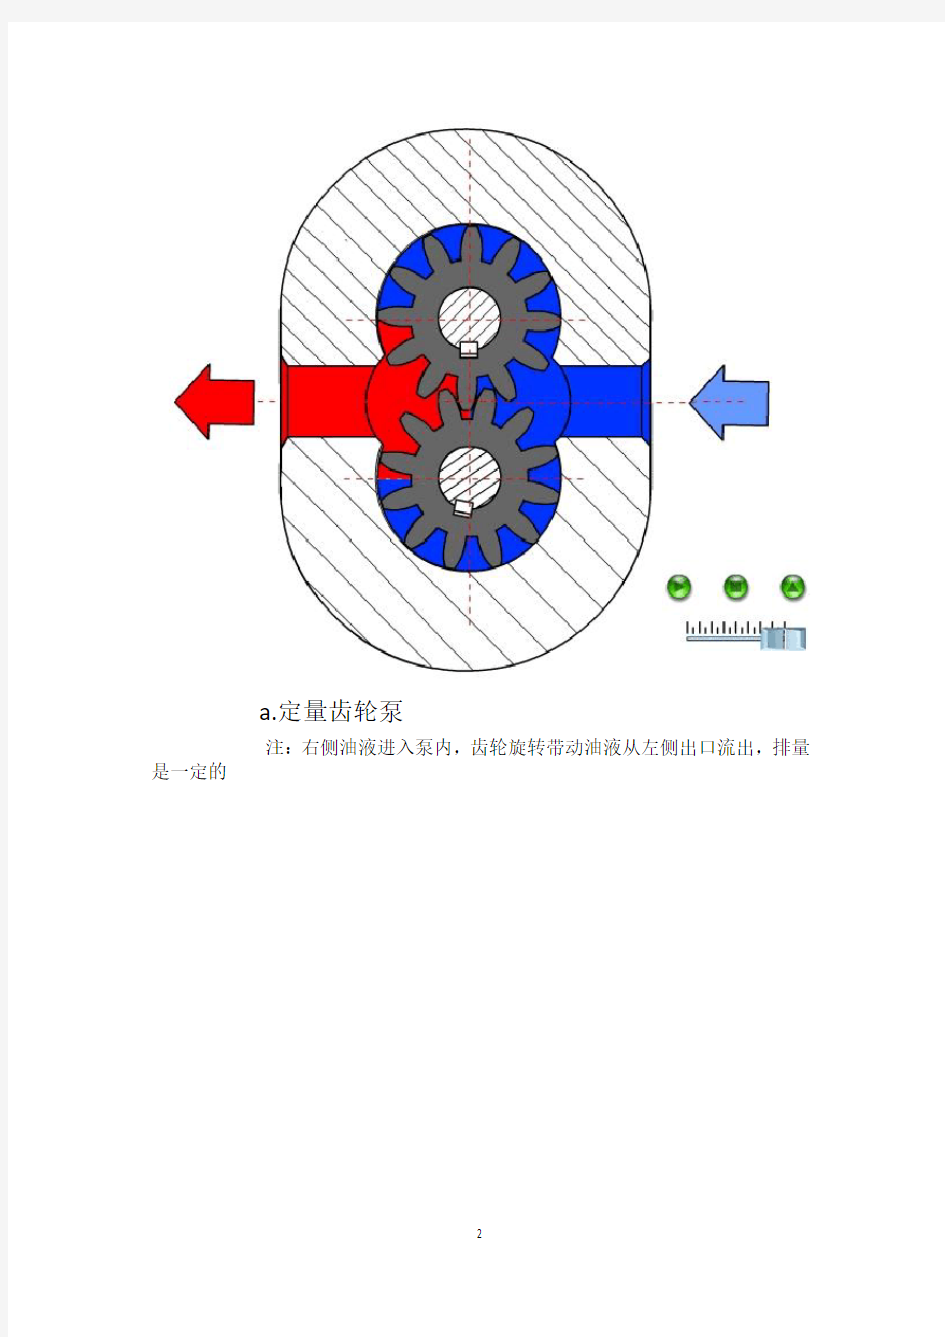 (完整版)海瑞克盾构机液压系统说明(附电路图)